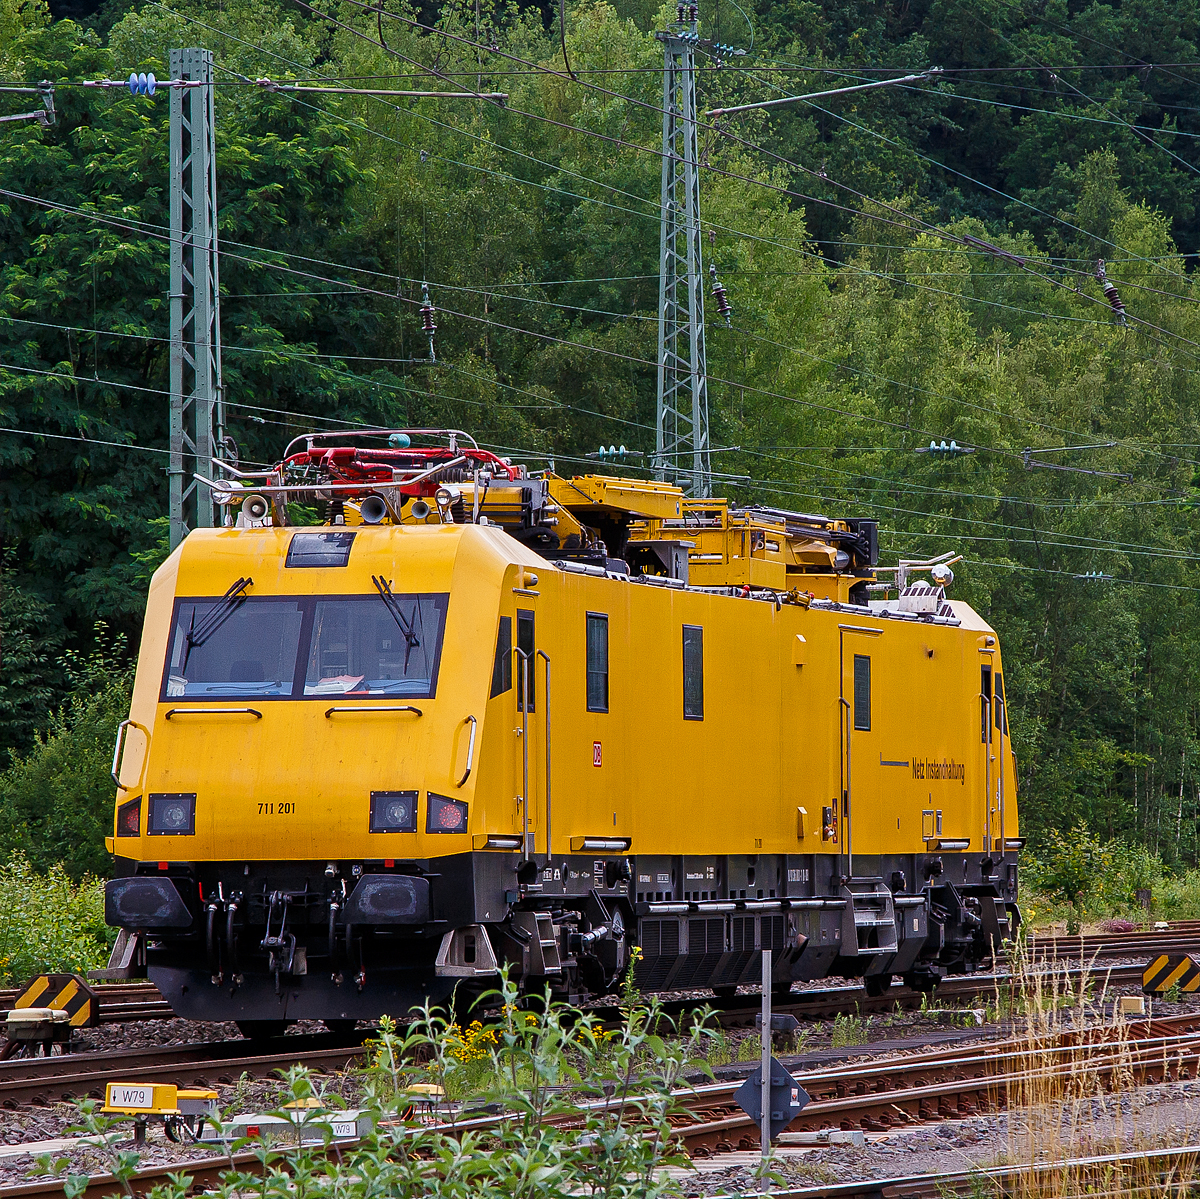 Nochmal als Nachschuss....
Das Oberleitungsinstandhaltungsfahrzeug (IFO) 711 201 (99 80 9136 001-1 D-DB) der DB Netz AG, ein Robel 57.44, fährt am 15.07.2021 durch Betzdorf (Sieg) in Richtung Köln.
